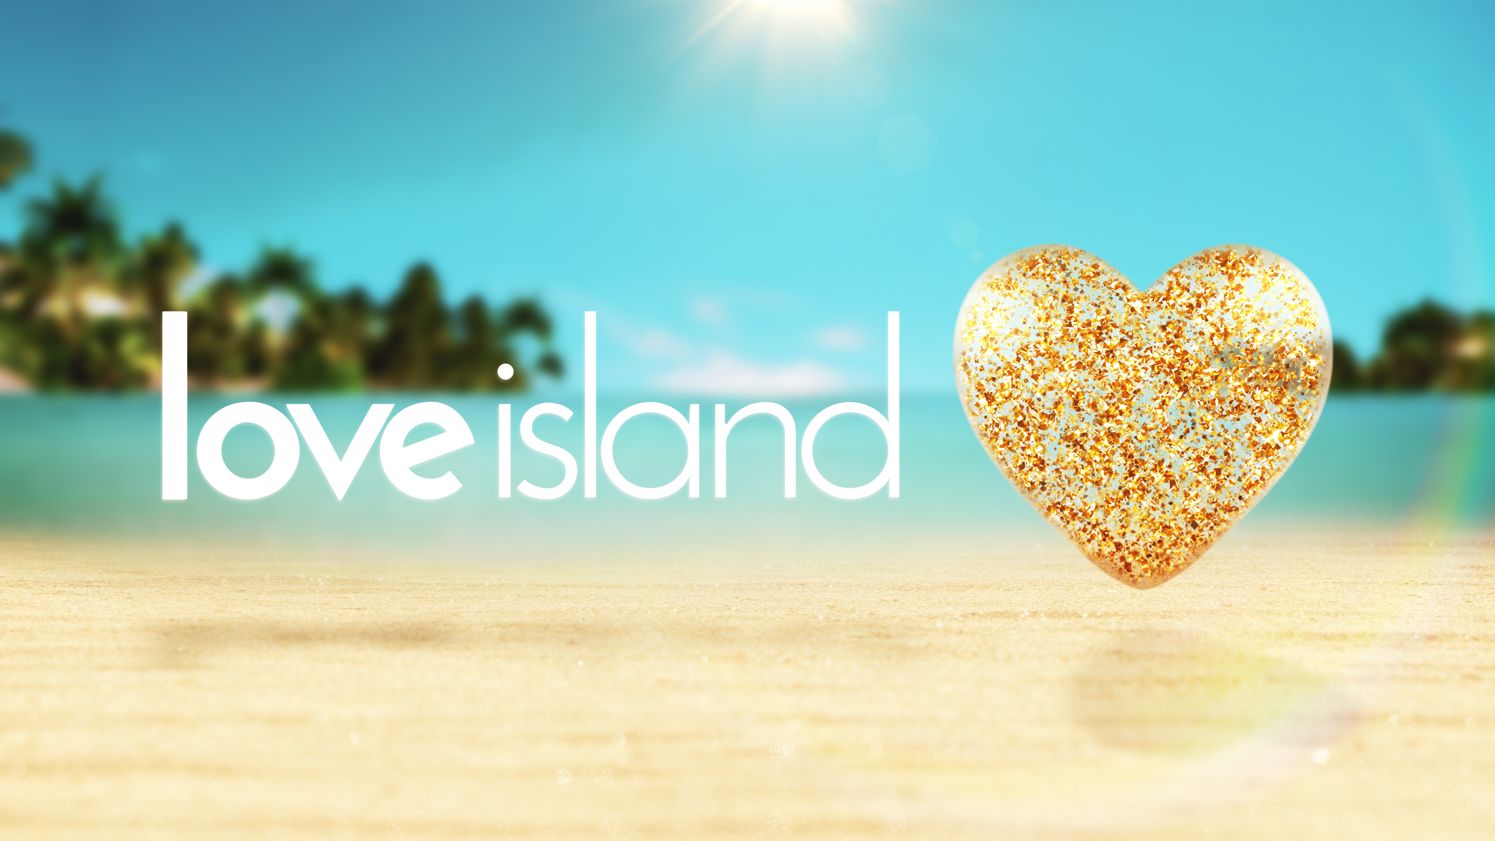 ITV's mega-hit 'Love Island' grows in popularity